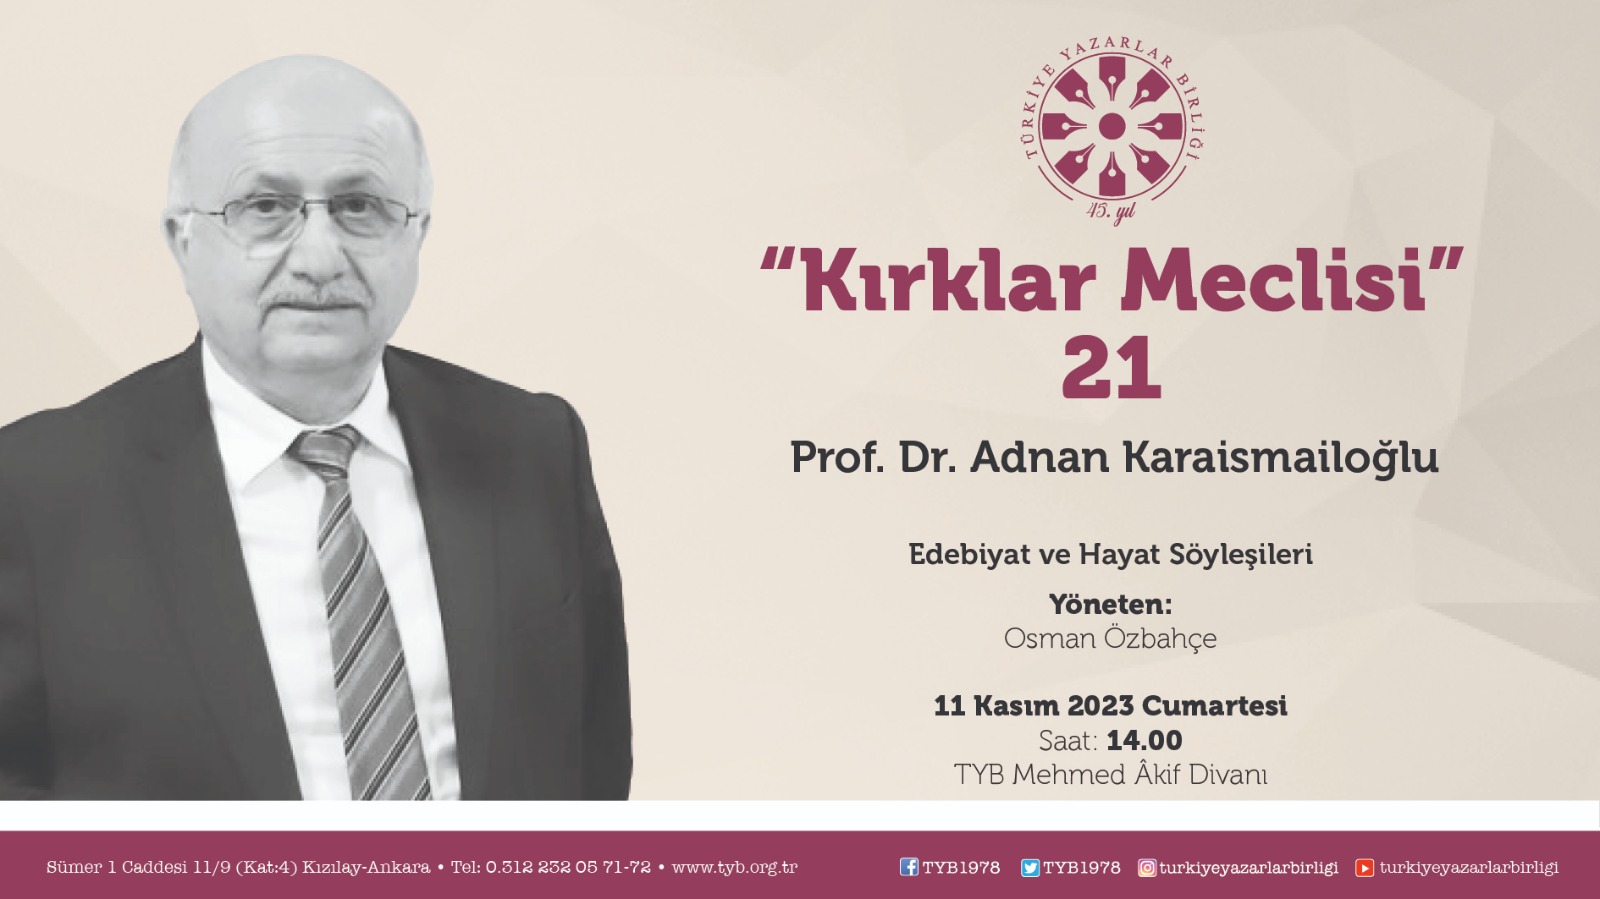 Prof. Dr. Adnan Karaismailoğlu "Kırklar Meclisi"nde konuşacak